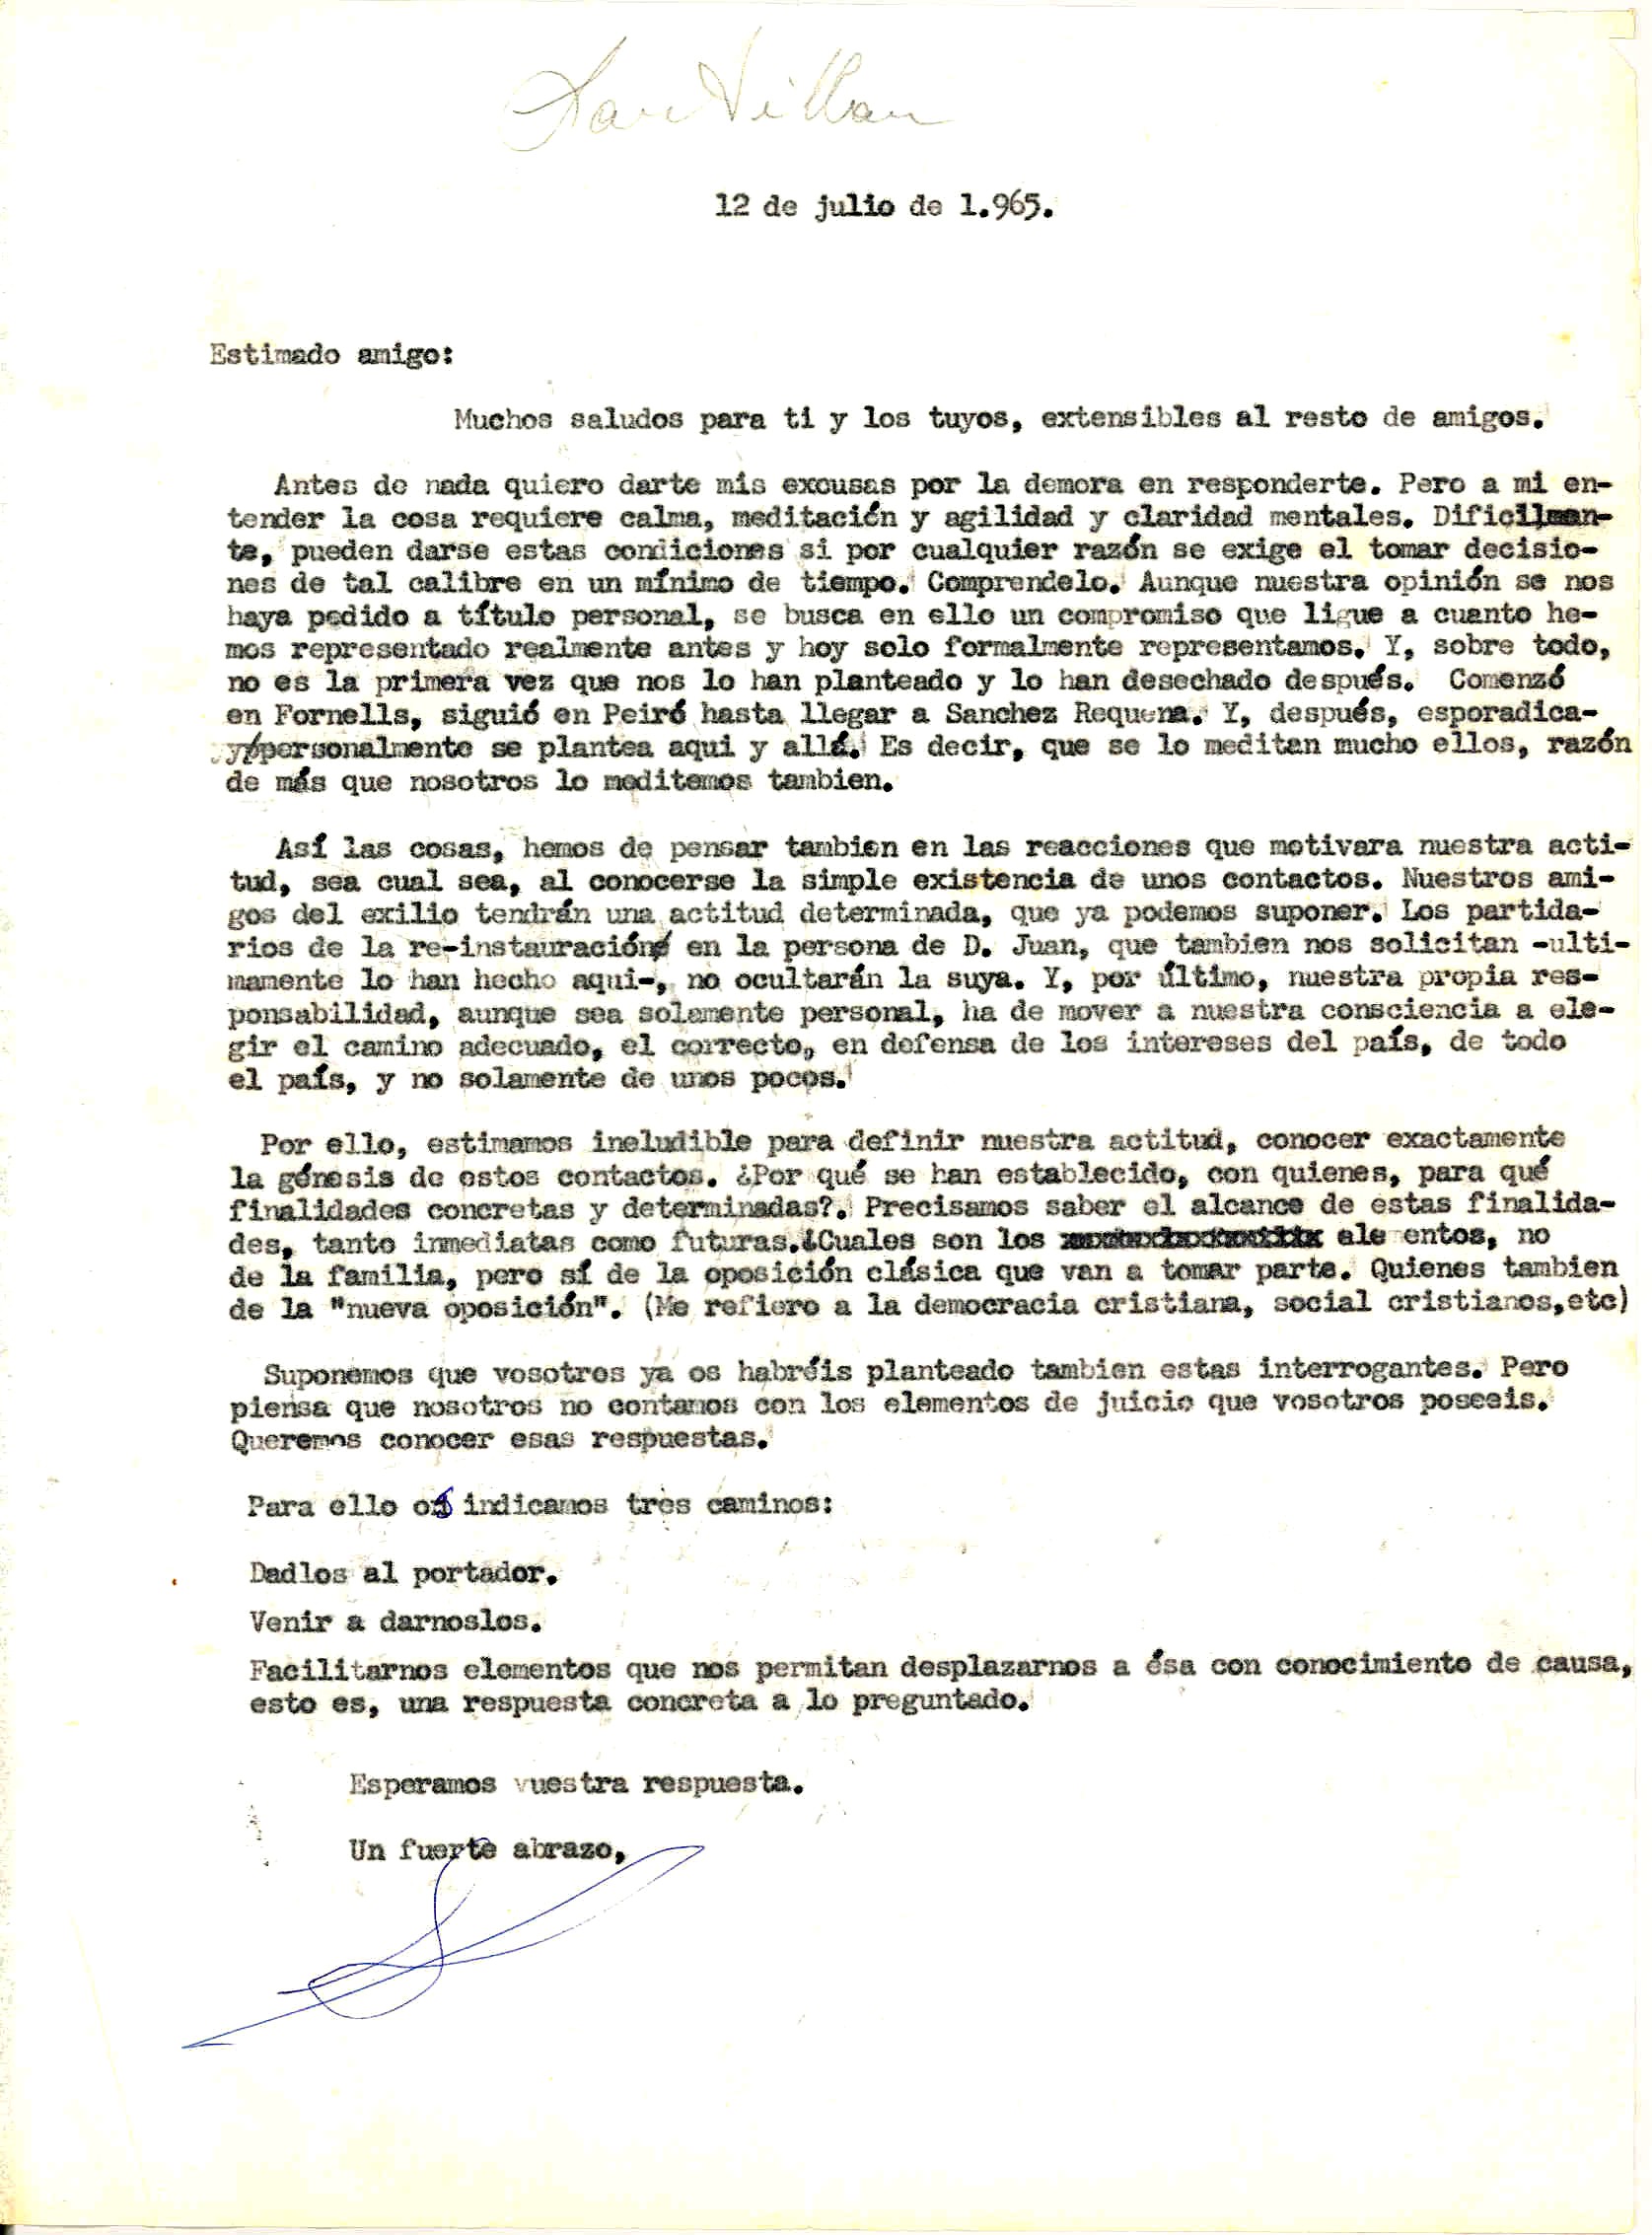 Carta de Diego Abad de Santillán solicitando información para poder tomar una decisión sobre su actitud y mostrarla públicamente.